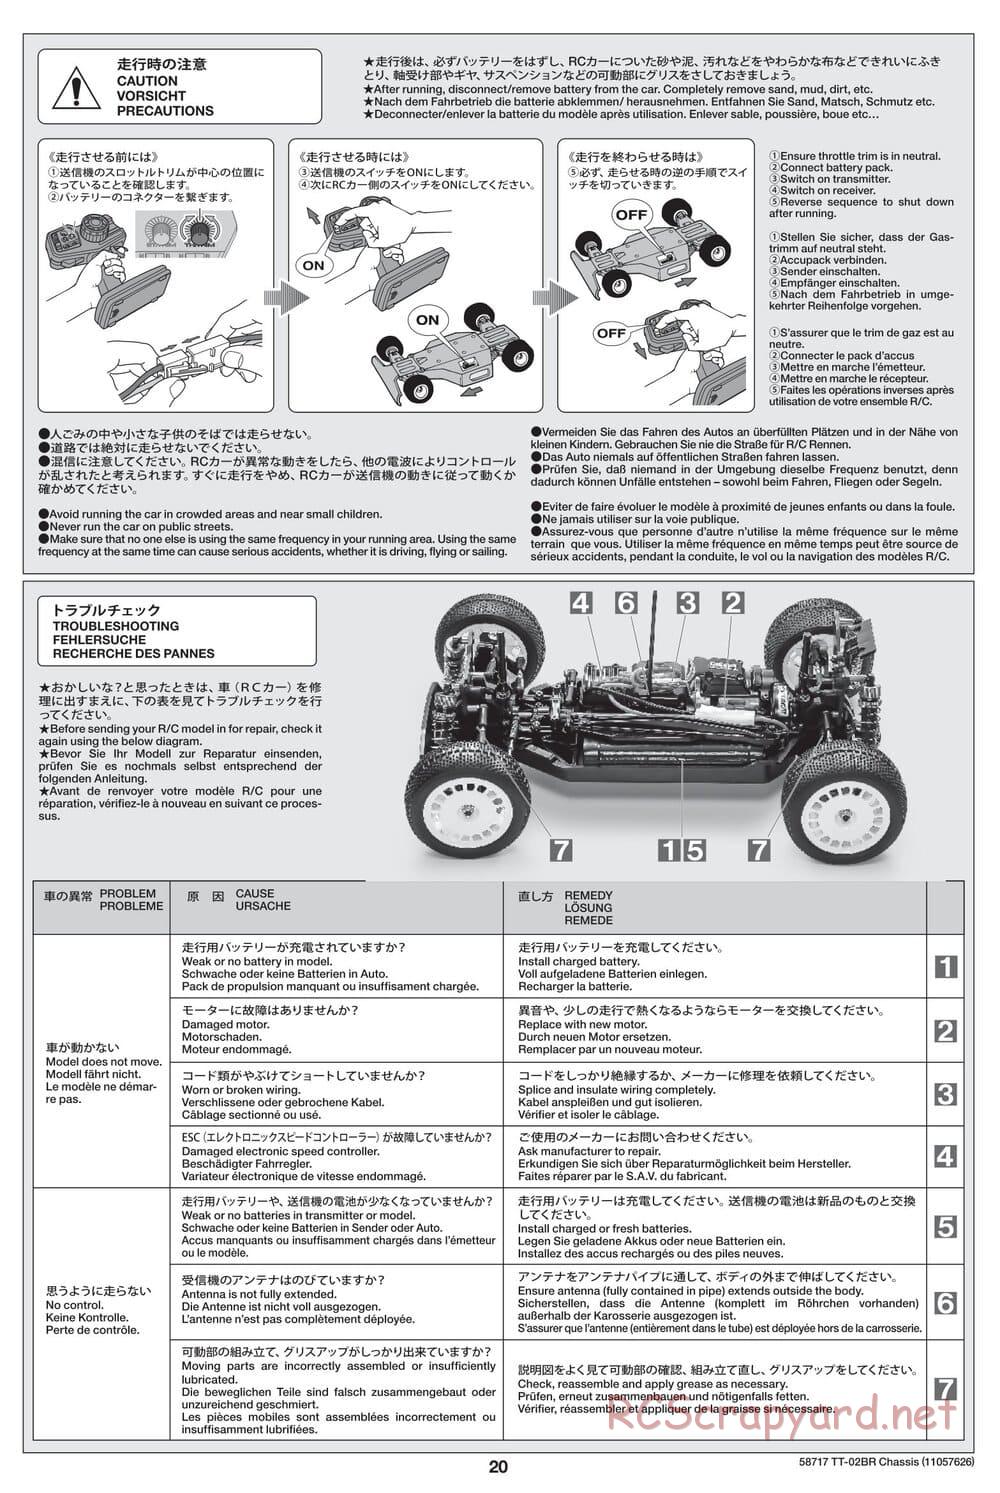 Tamiya - TT-02BR Chassis - Manual - Page 20